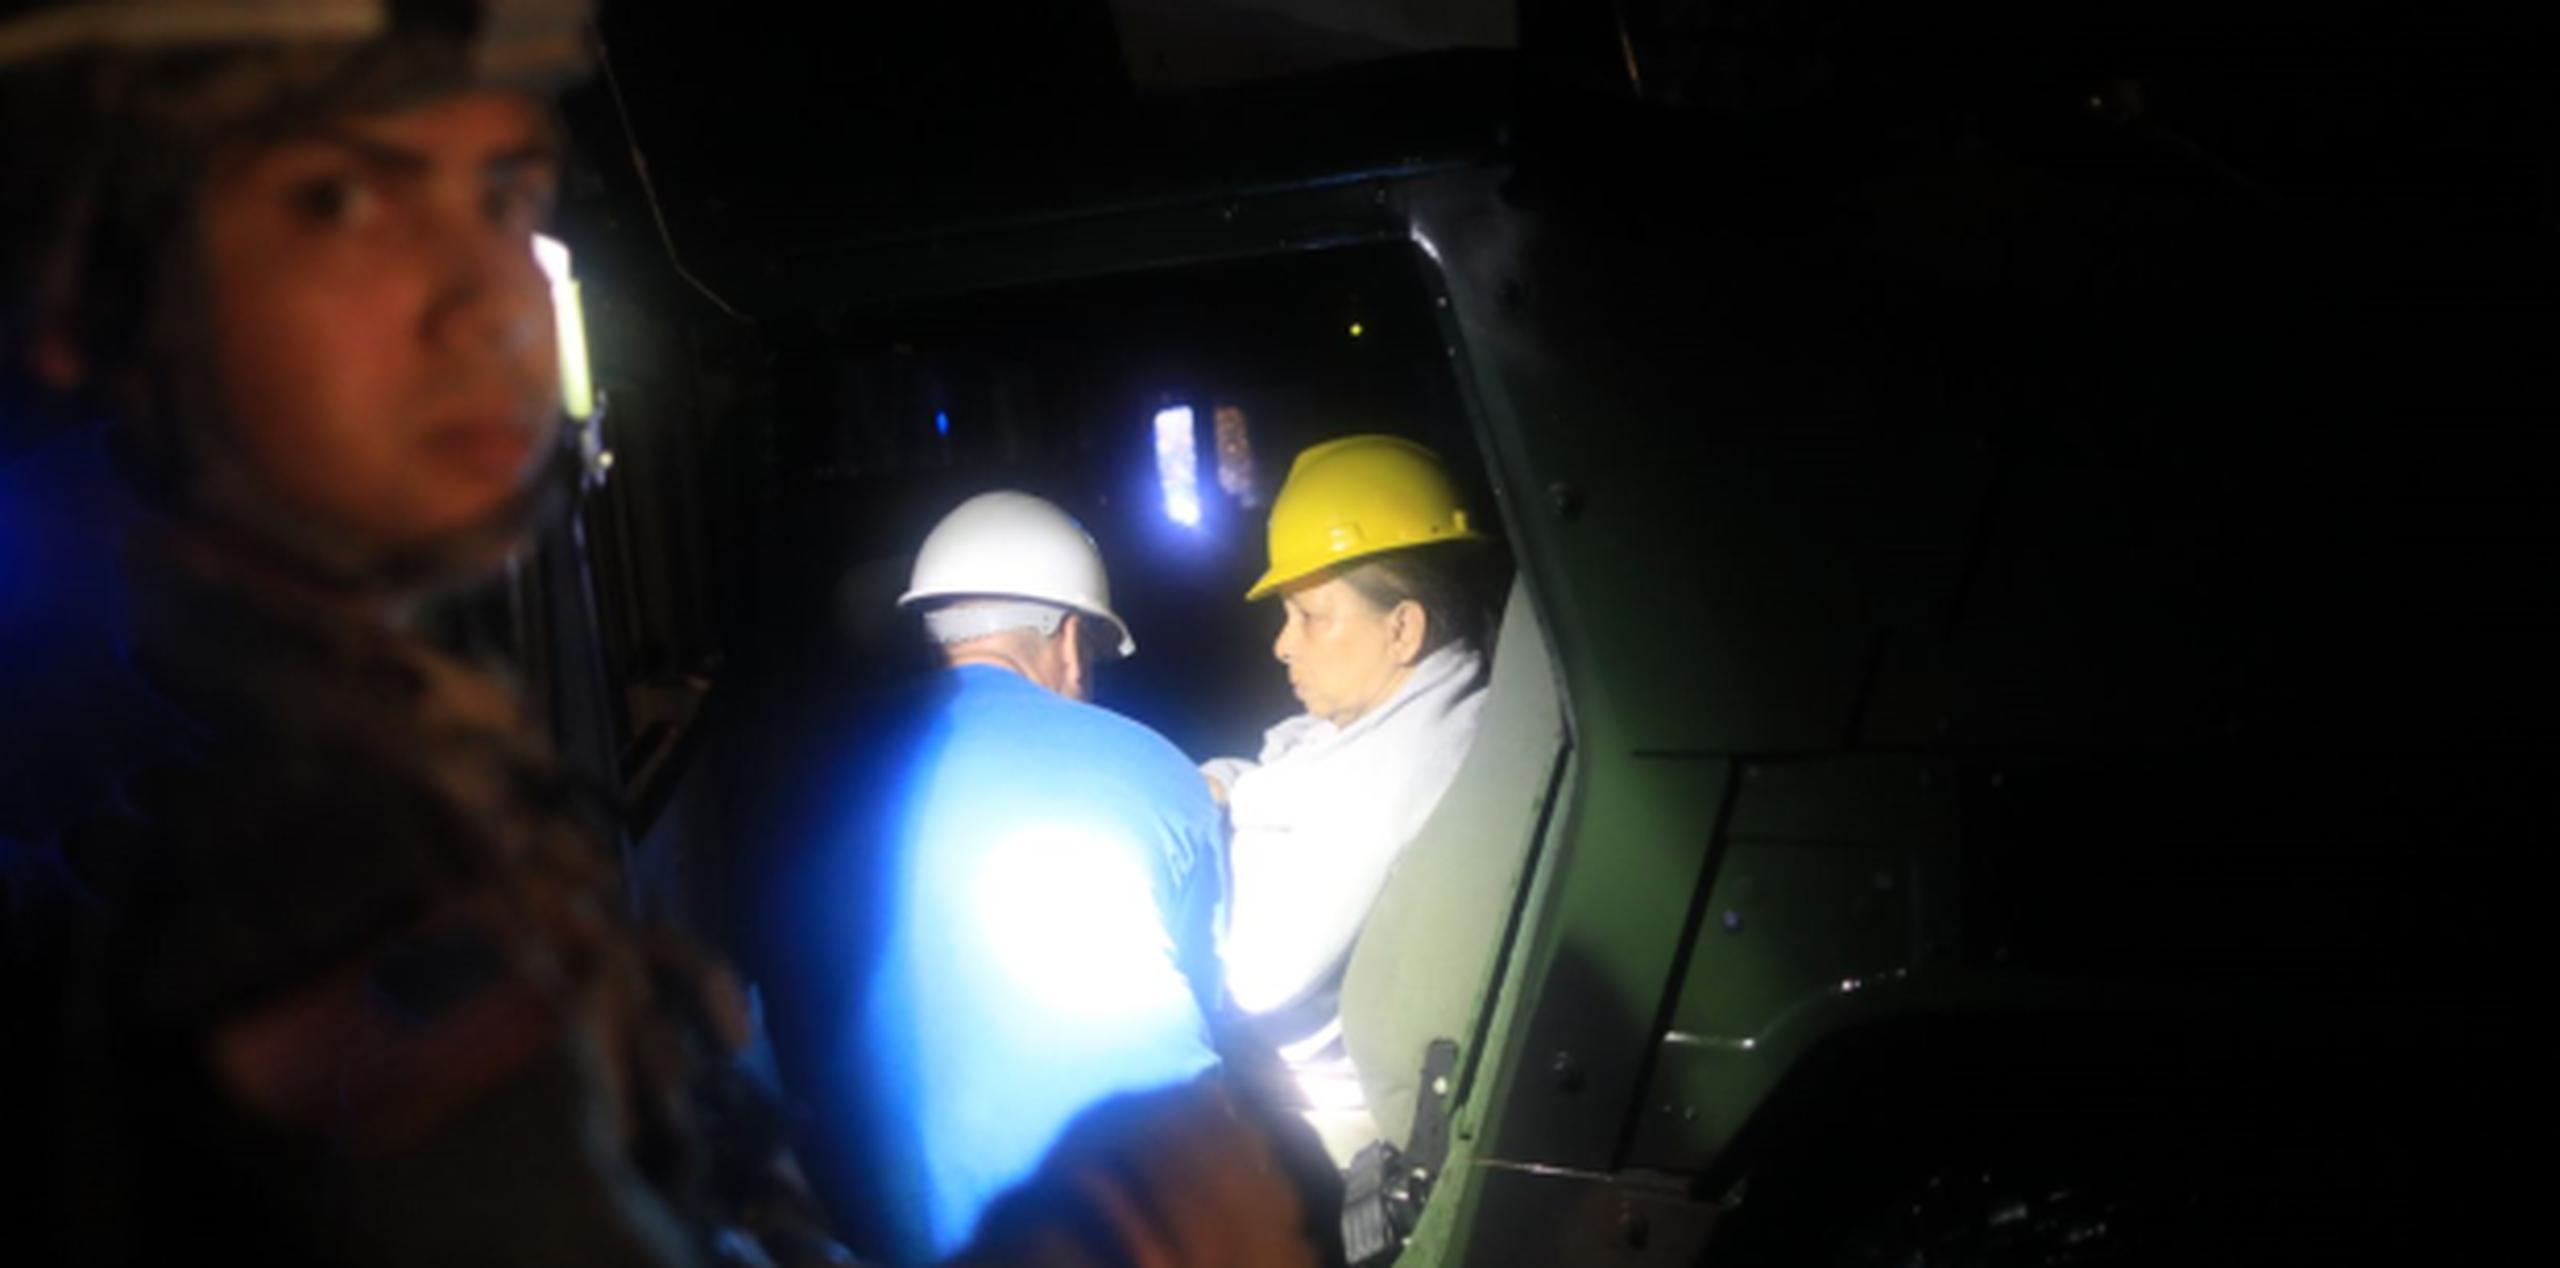 Las personas rescatadas son movilizadas en grupos pequeños en intervalos de 10 a 12 minutos en una guagua de la Guardia Nacional. (xavier.araujo@gfrmedia.com)